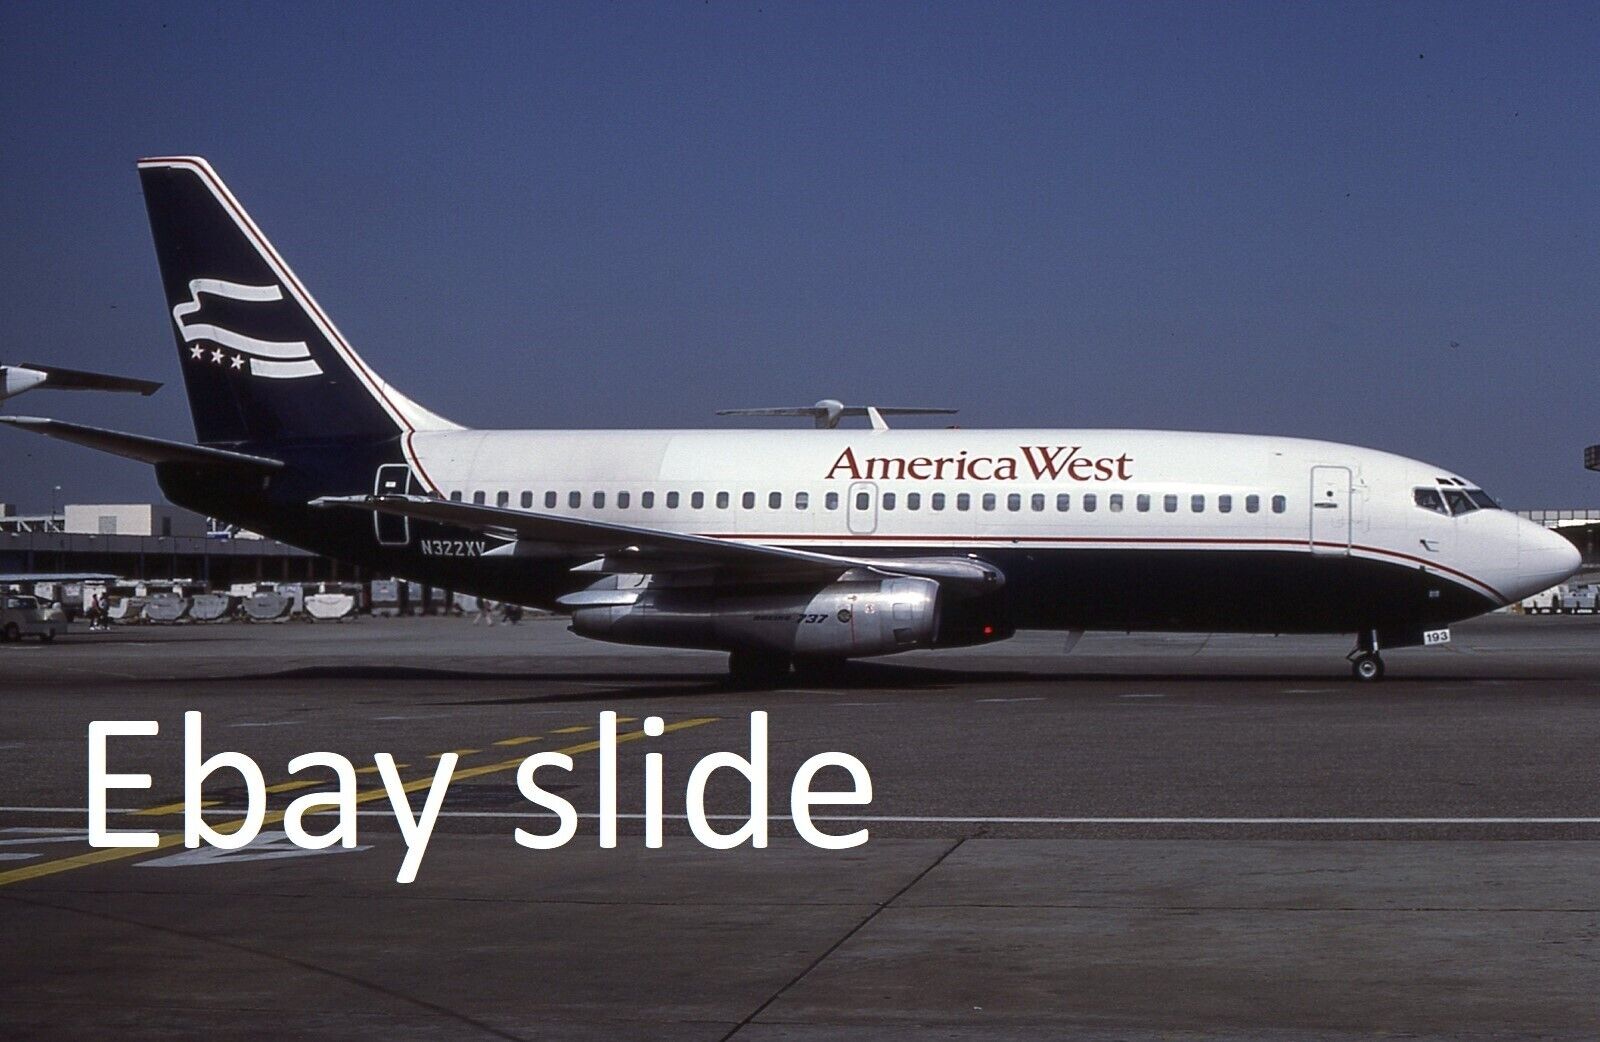 Orig 1987 35mm Kodachrome slide - America West 737 N322XV at Los Angeles Airport